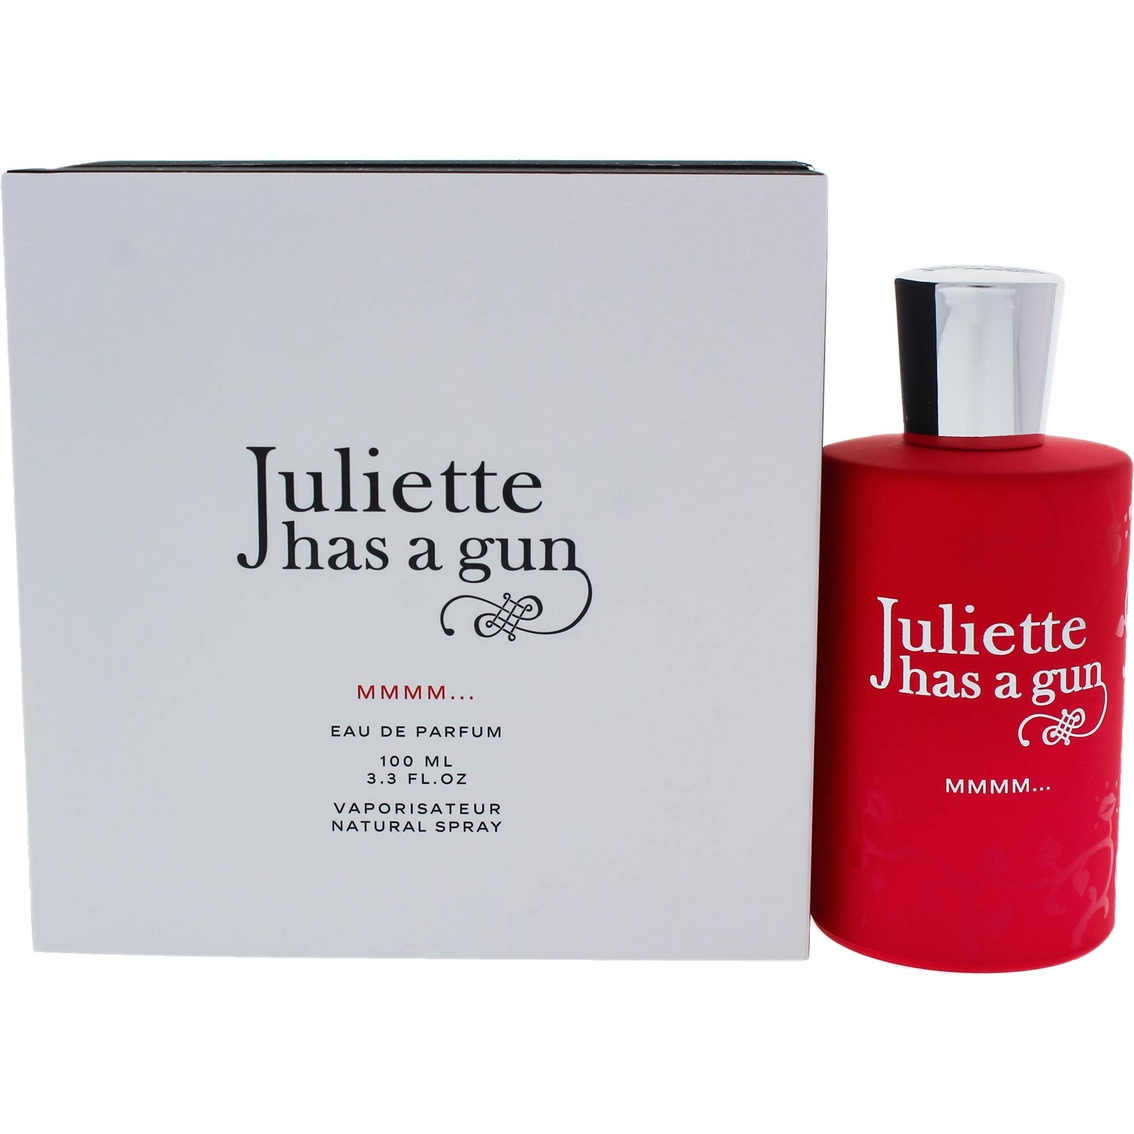 Juliette Has A Gun Mmmm Eau de Parfum Spray - Image 2 of 2